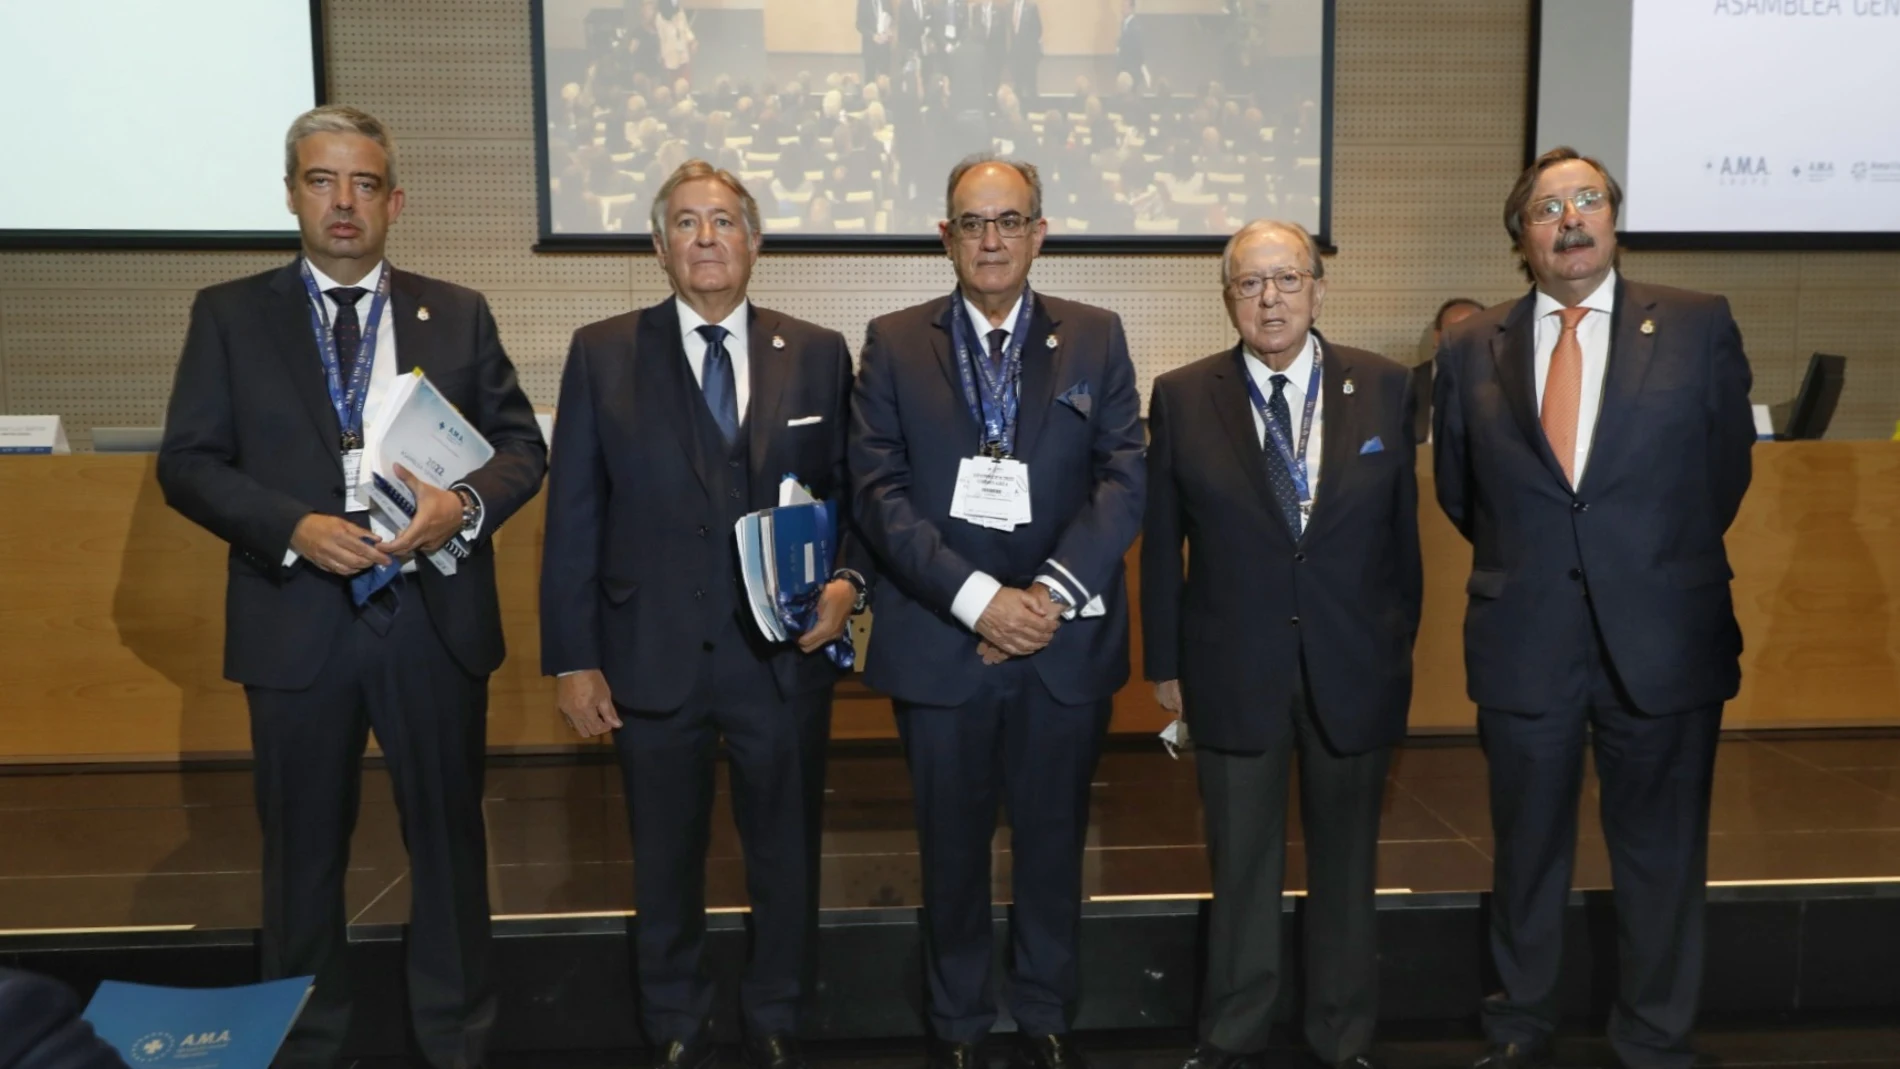 De izquierda a derecha, Jose Luis Bahillo, Luis Alberto García, Luis Campos, Diego Murillo y Luis Cáceres, en la Asamblea General de AMA